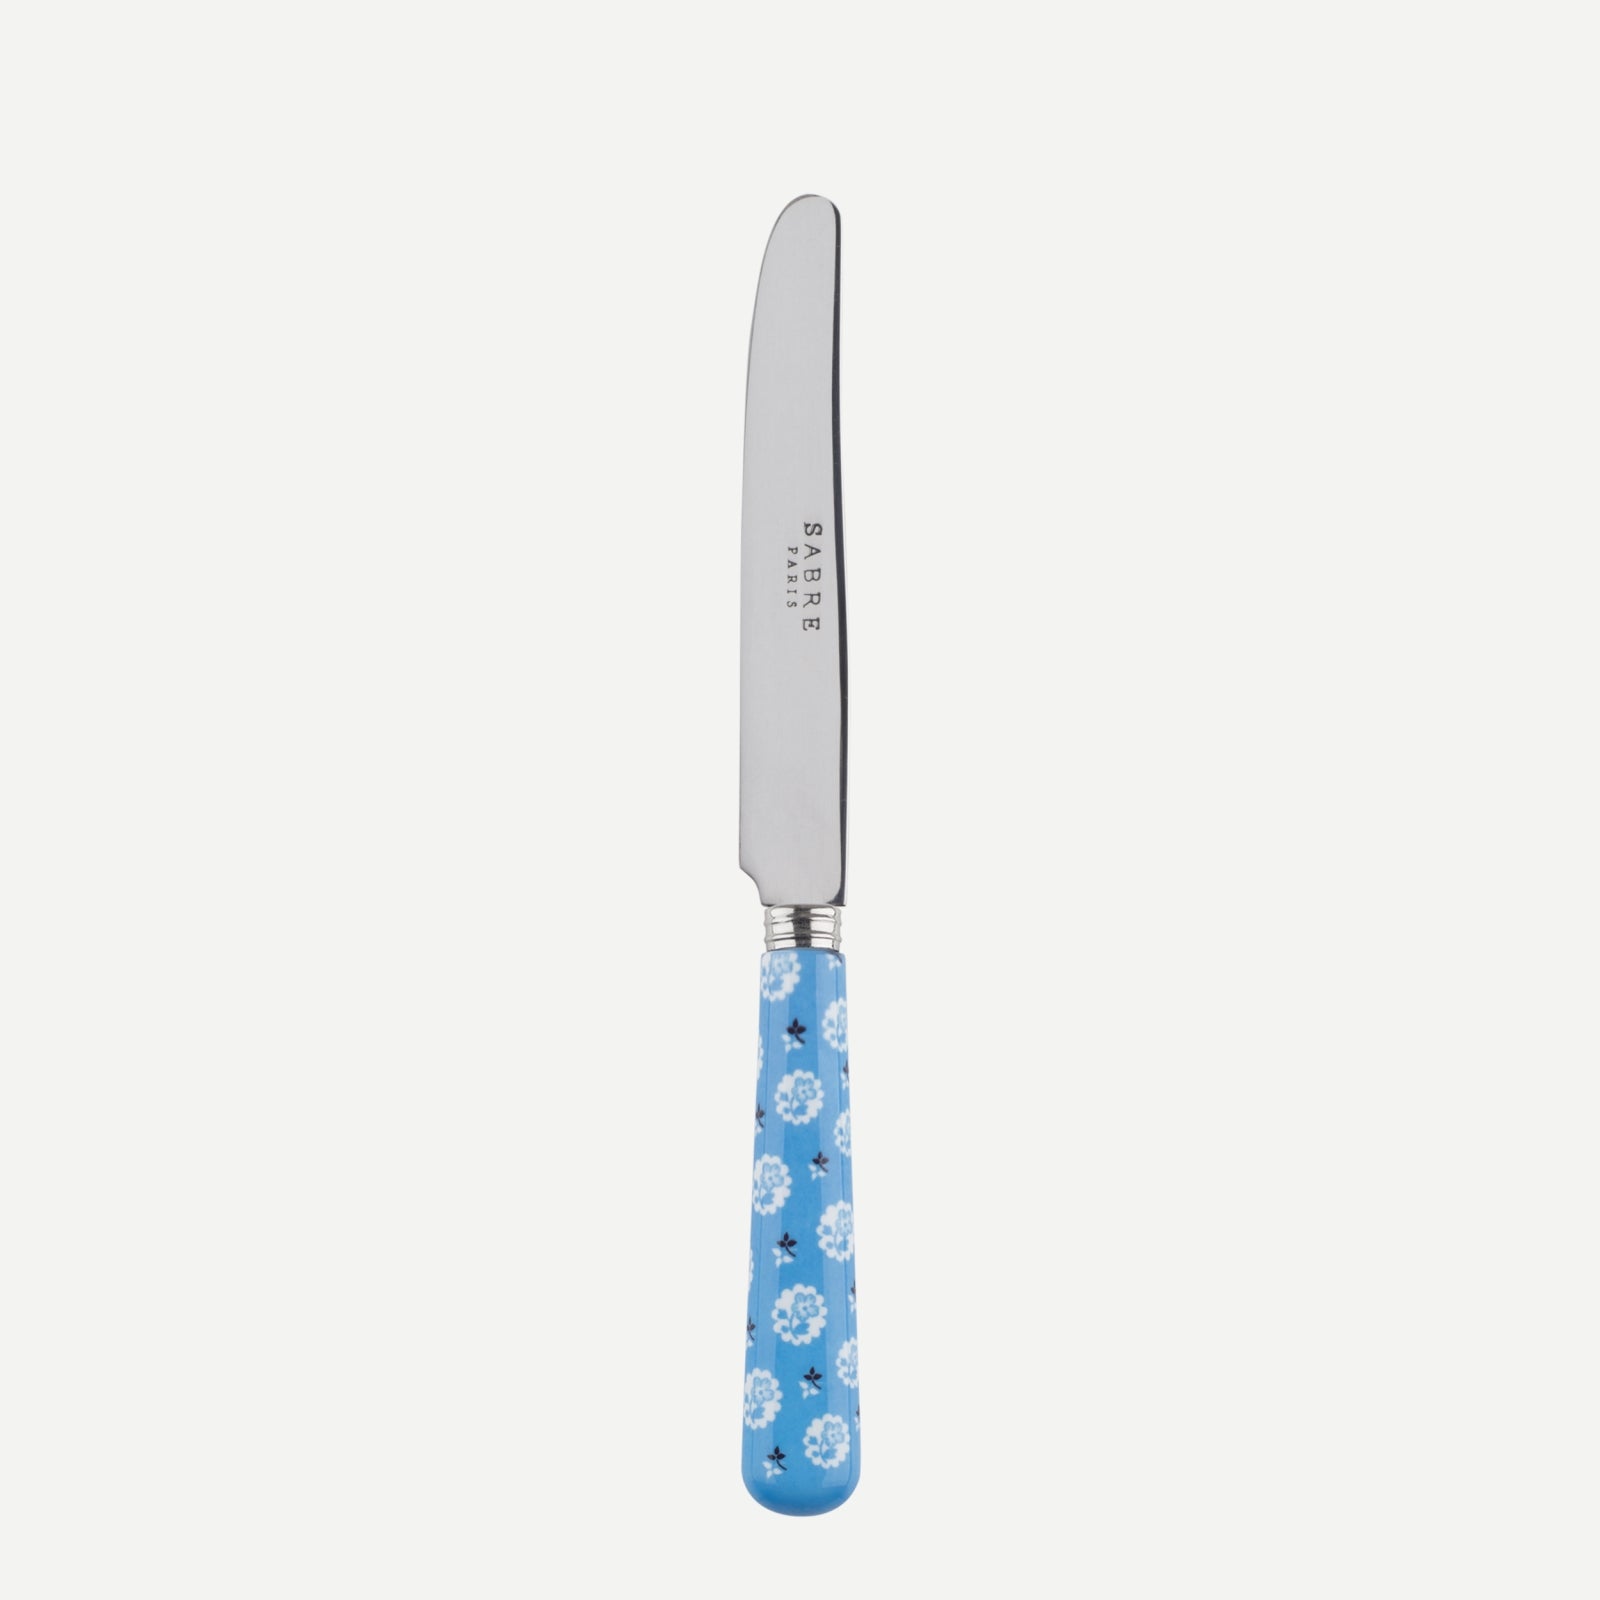 Petit couteau - Provençale - Bleu clair